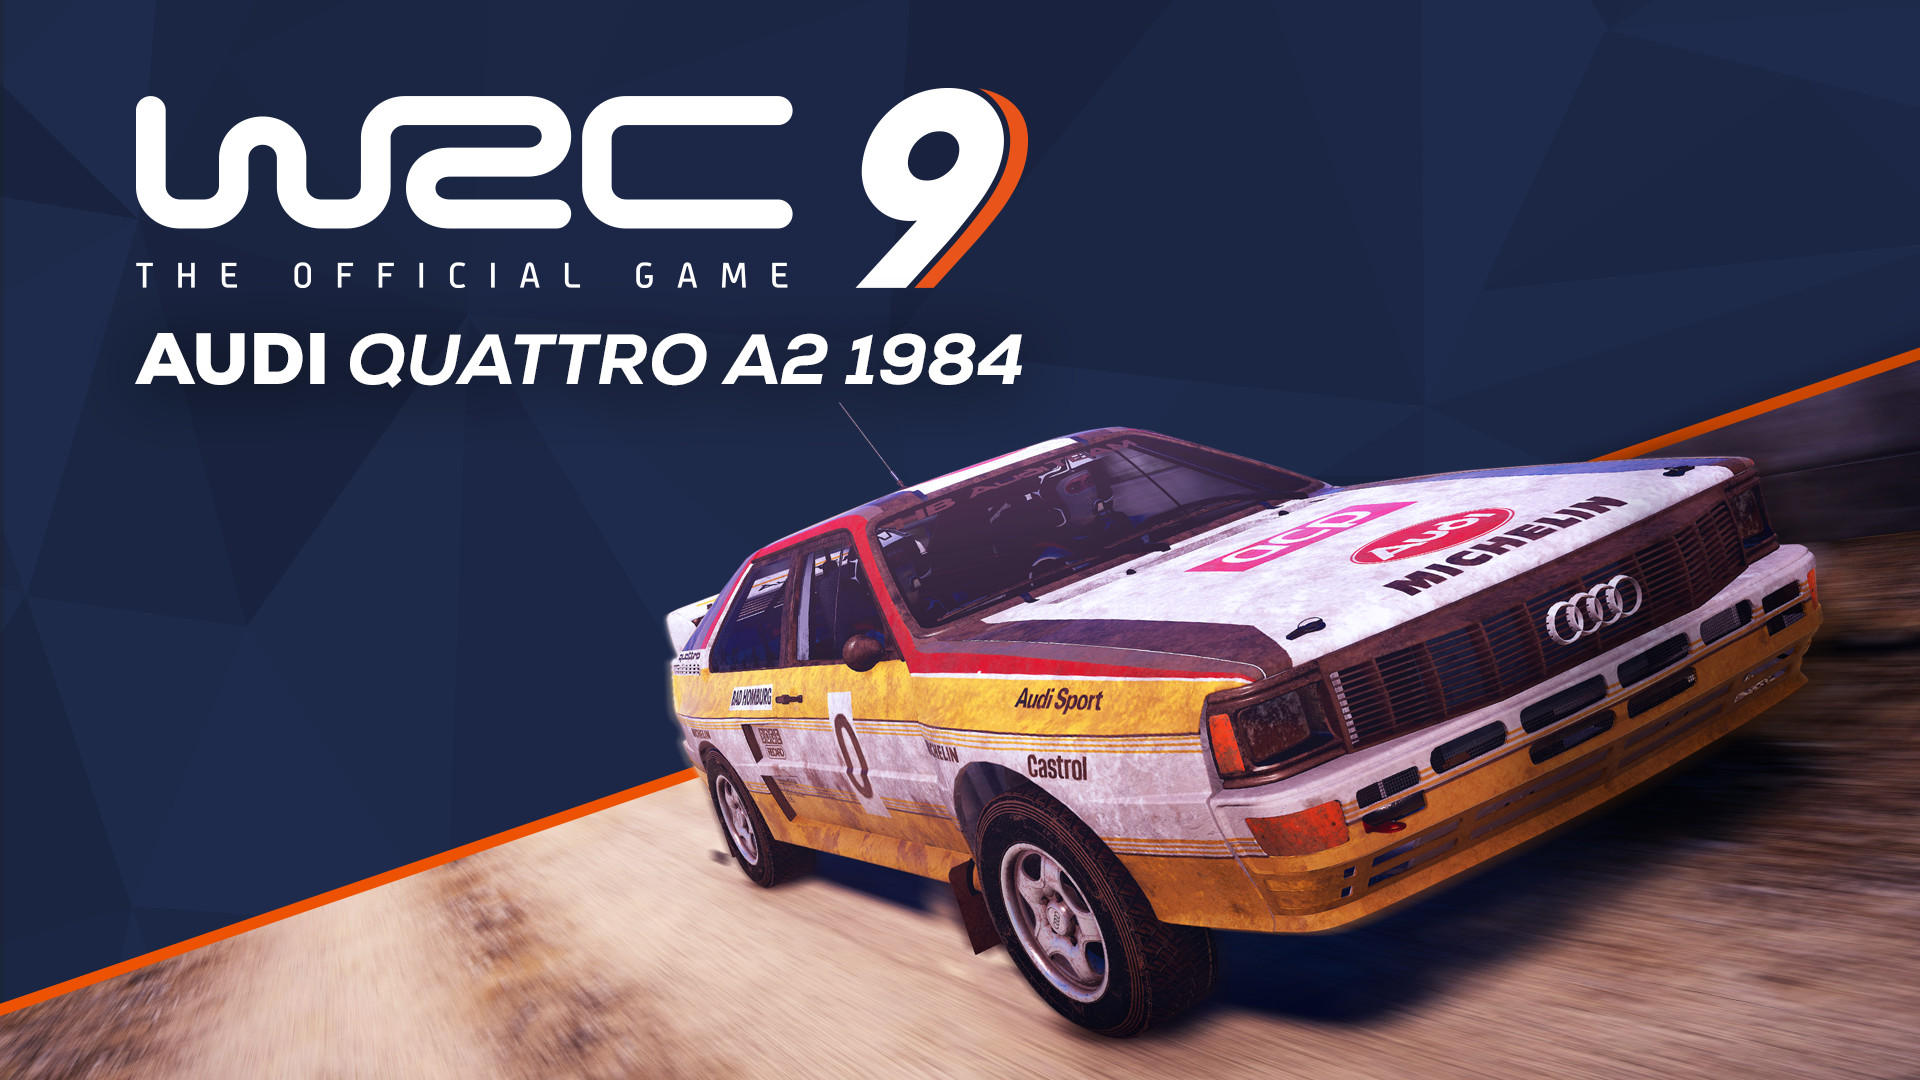 WRC 9 - Audi Quattro A2 1984 DLC Steam CD Key, 1.83$